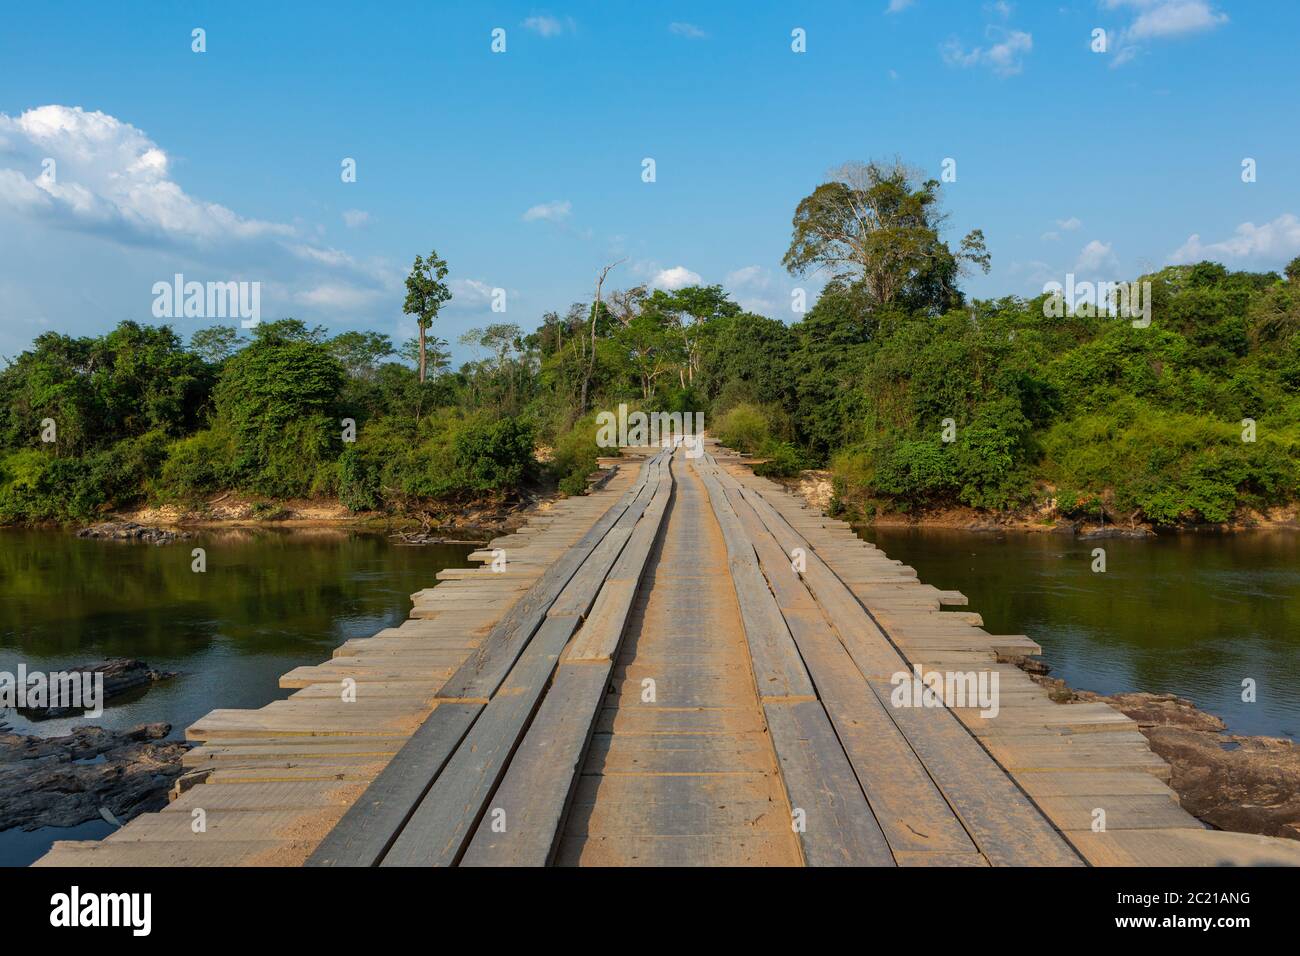 route dangereuse de terre traversant un pont rustique en bois sur la rivière dans la forêt amazonienne. Point de vue du conducteur. Concept de transport, logistique, voyage, aventure Banque D'Images